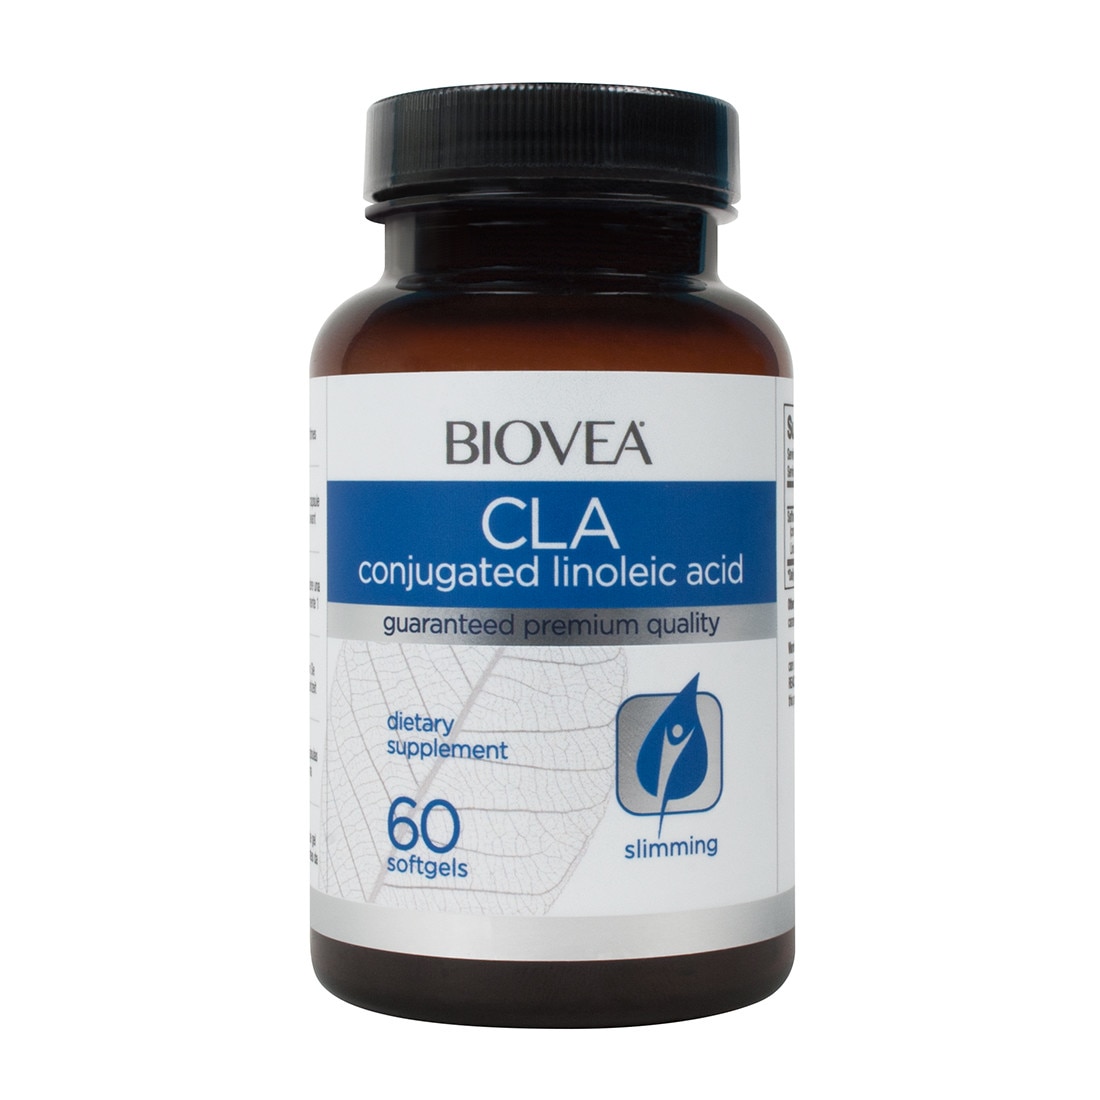 CLA 1000 mg - GymBeam